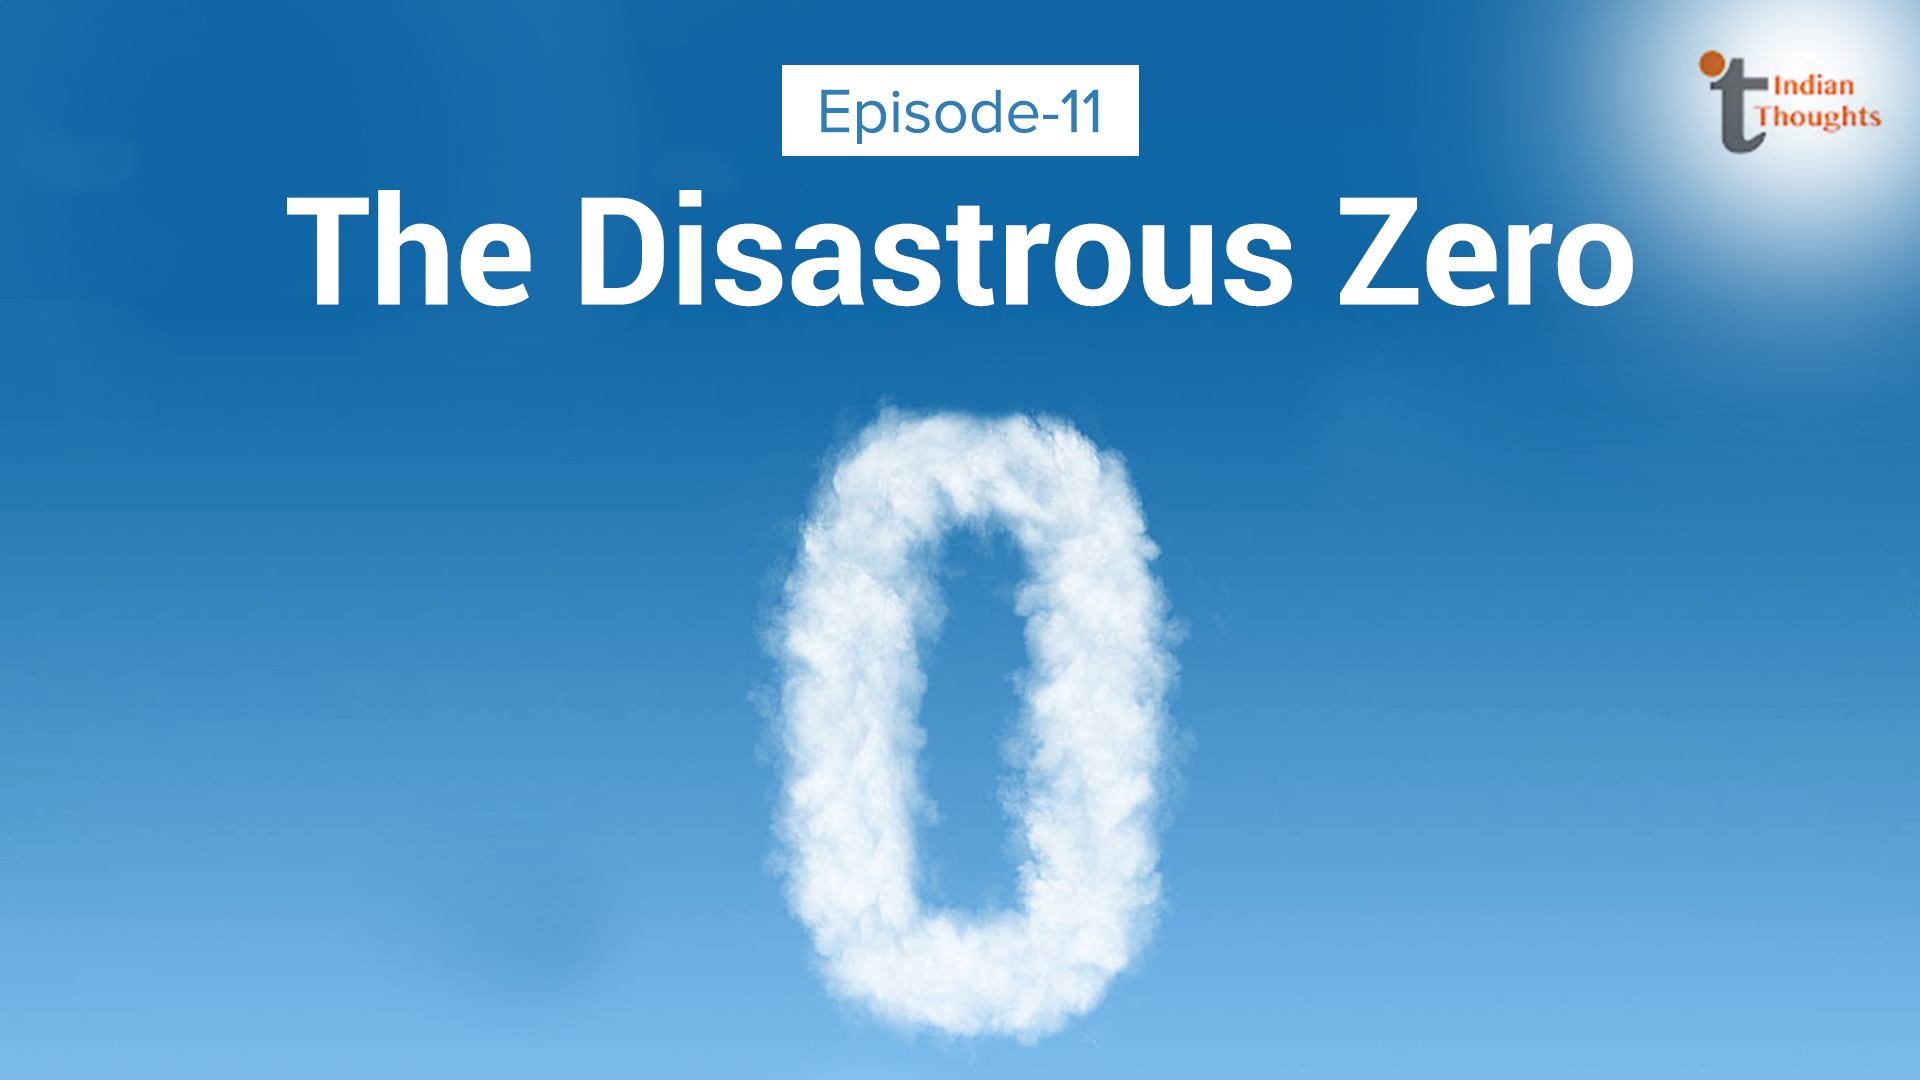 The disastrous zero